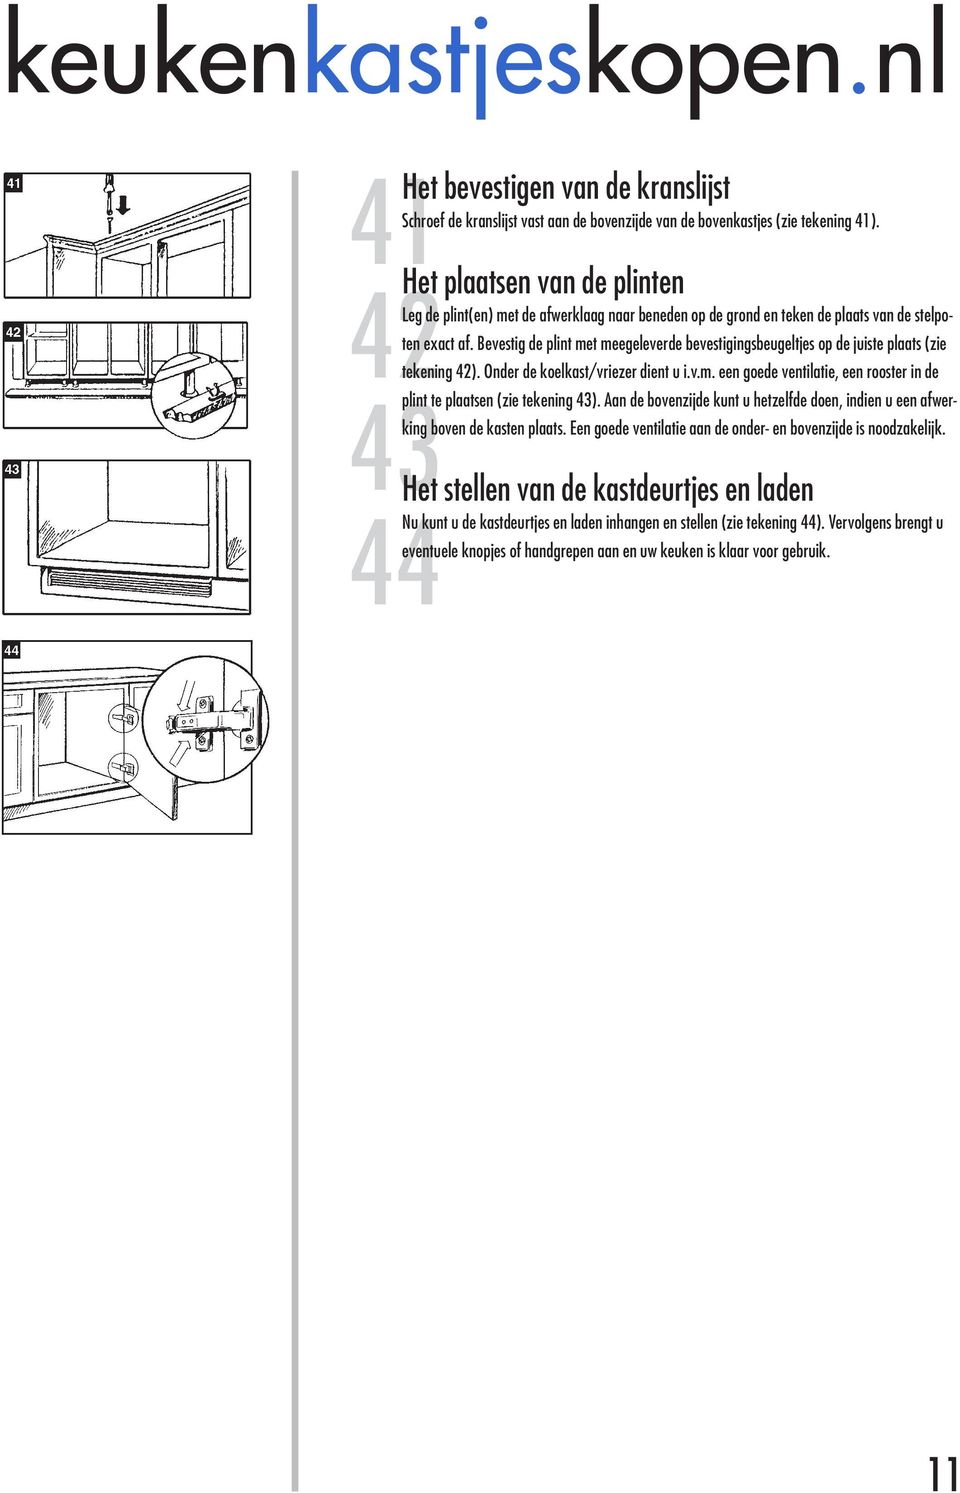 Bevestig de plint met meegeleverde bevestigingsbeugeltjes op de juiste plaats (zie tekening 42). Onder de koelkast/vriezer dient u i.v.m. een goede ventilatie, een rooster in de plint te plaatsen (zie tekening 43).